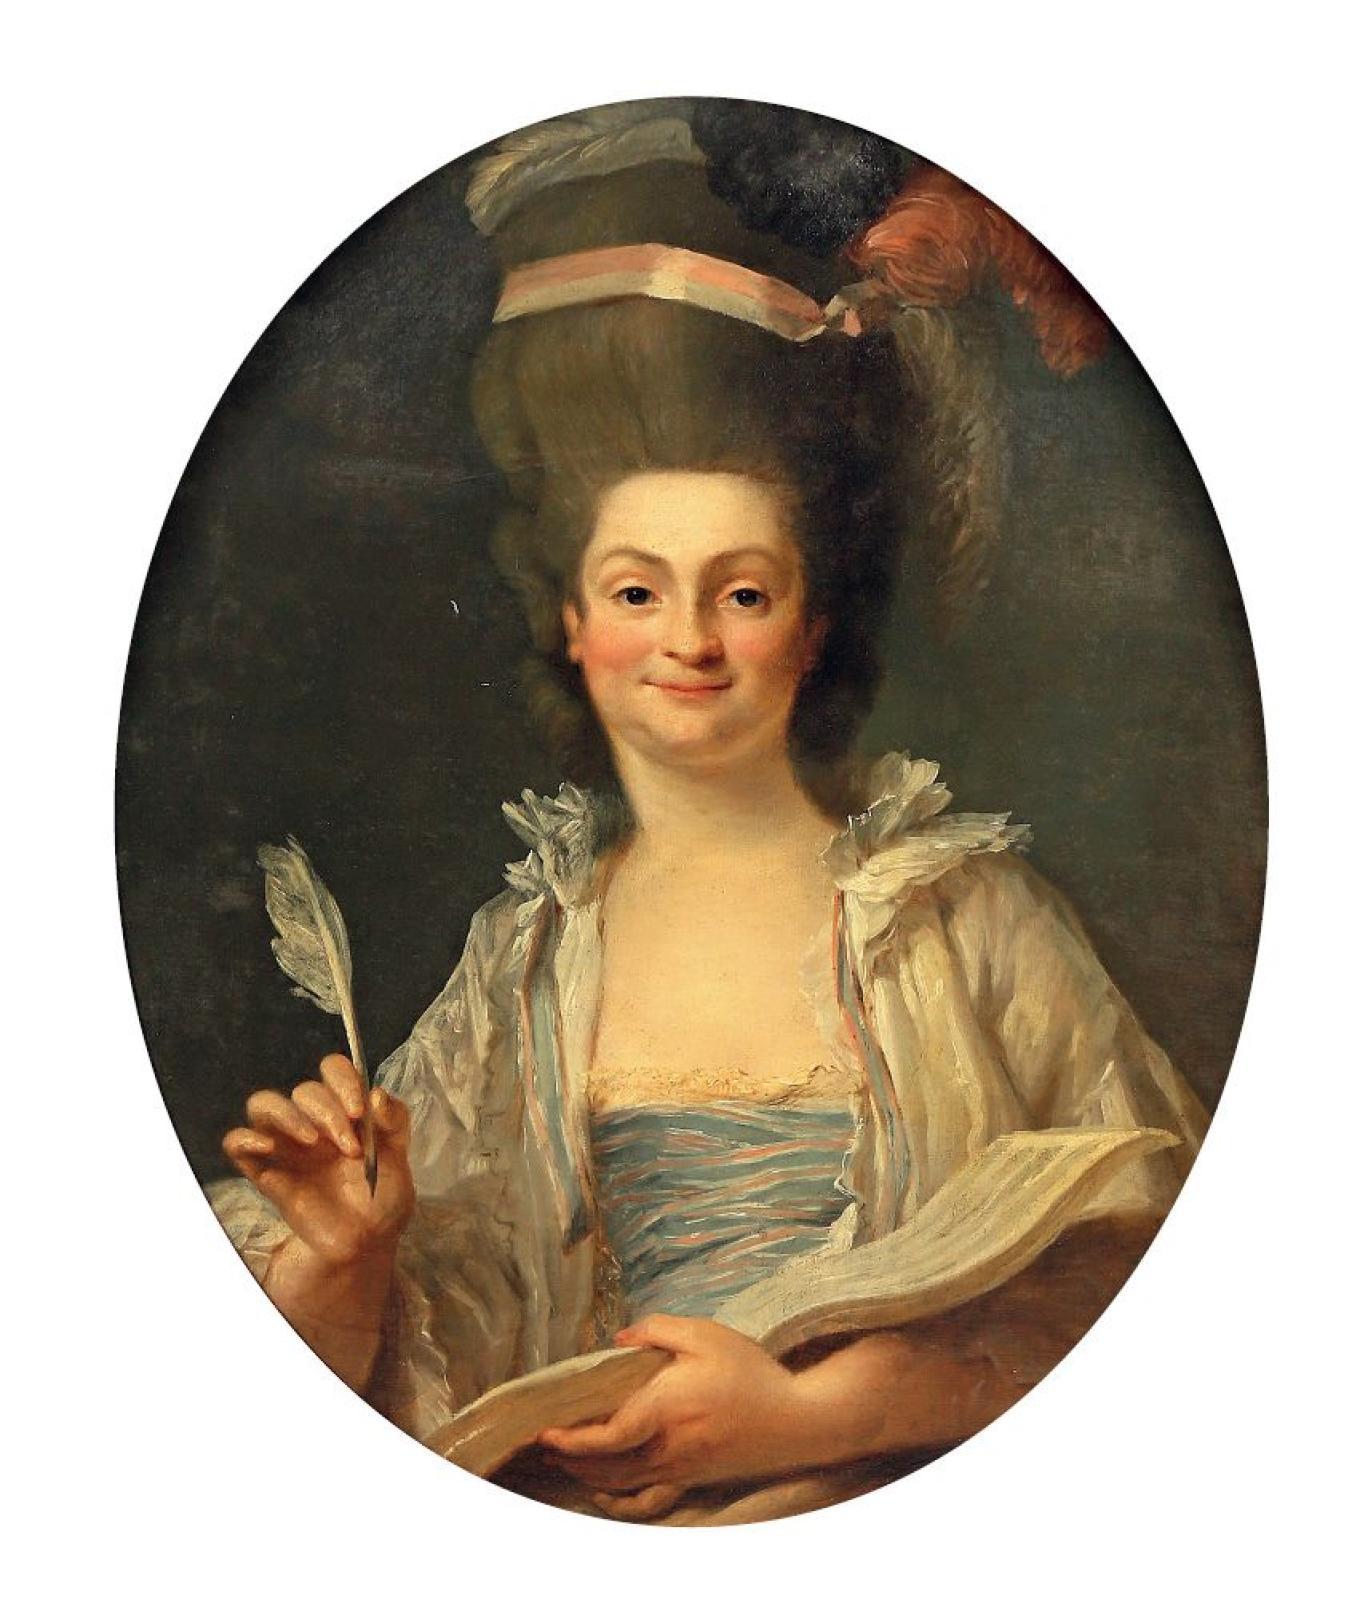 Portrait de Marie-Emmanuelle Bayon par Jean-Baptiste-Claude Robin, épouse de l'architecte Victor Louis, exposé au Salon de l'Académie royale de peinture et de sculpture de 1777. [Wikipedia]